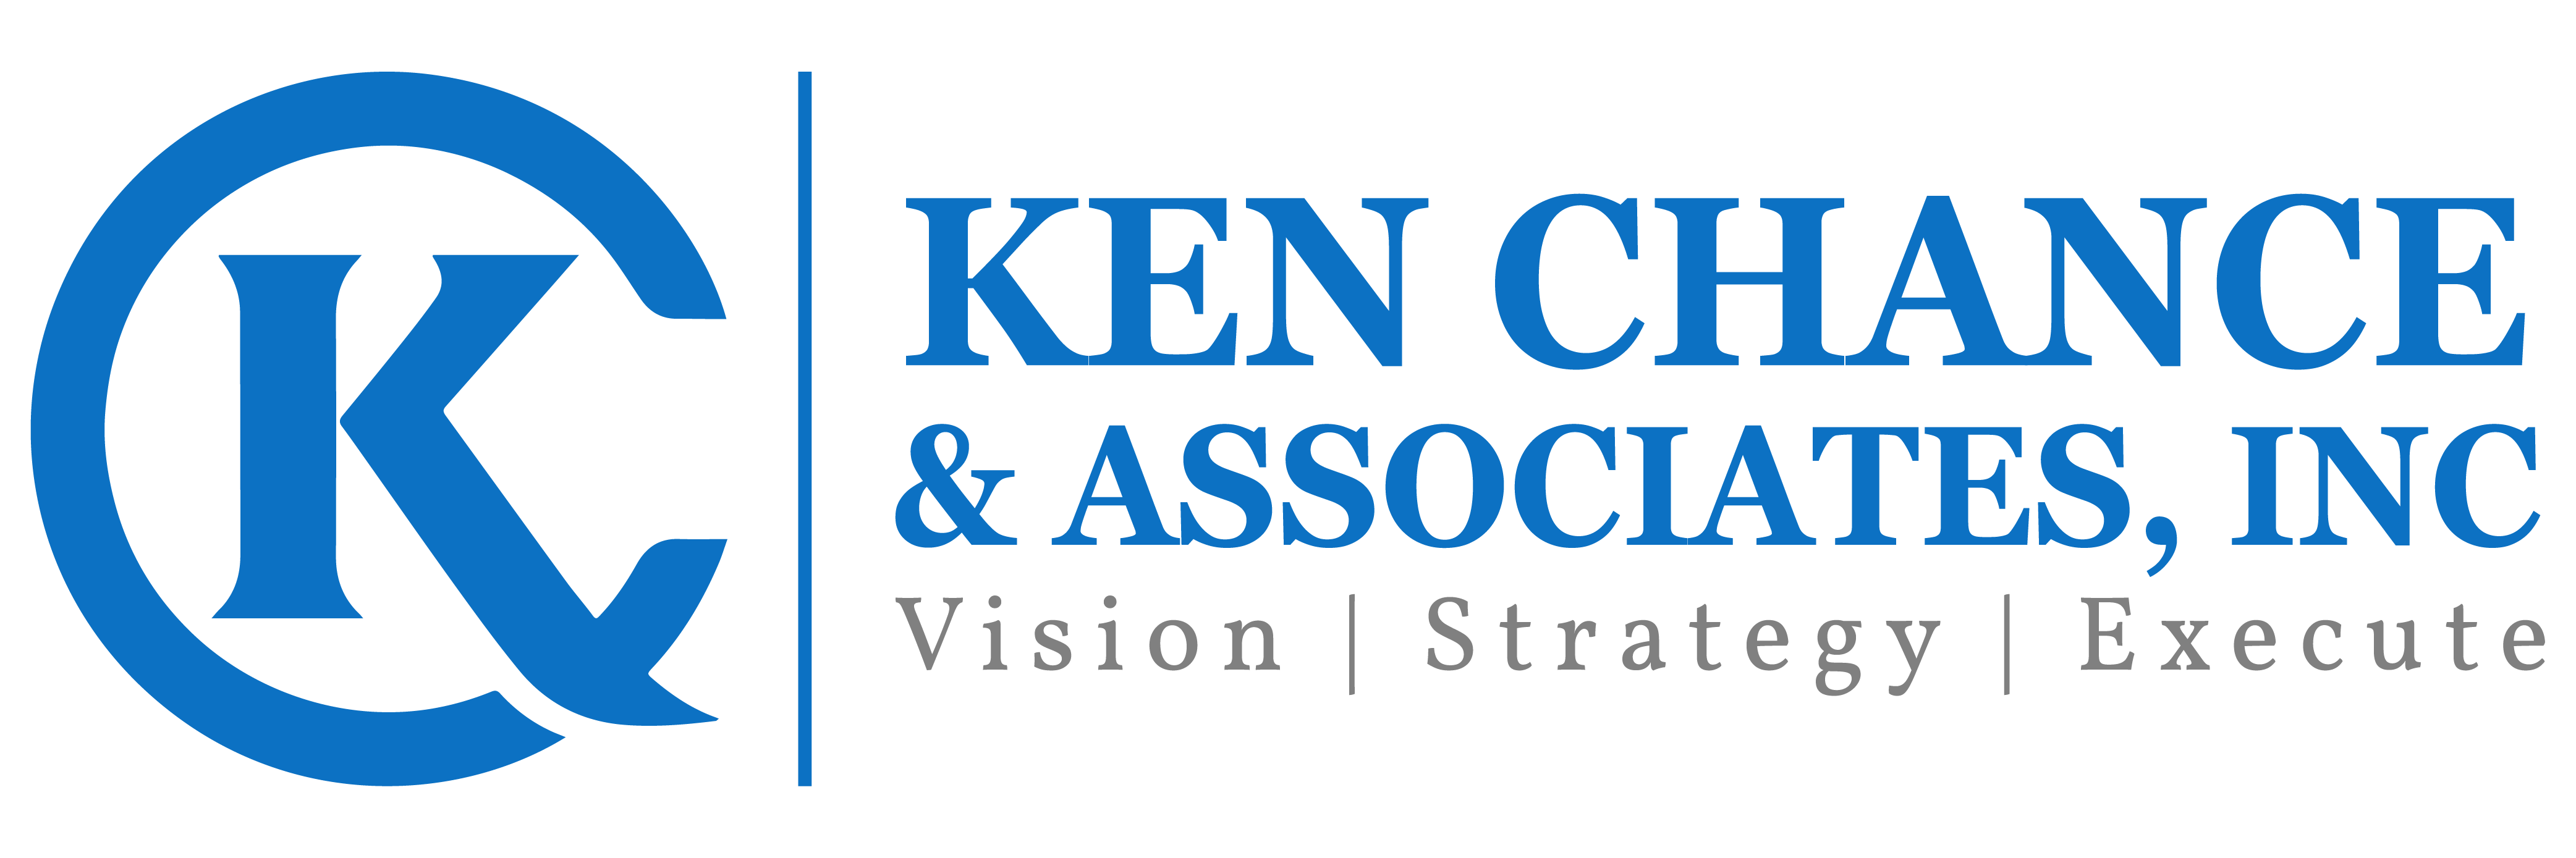 Ken Chance & Associates, Inc.